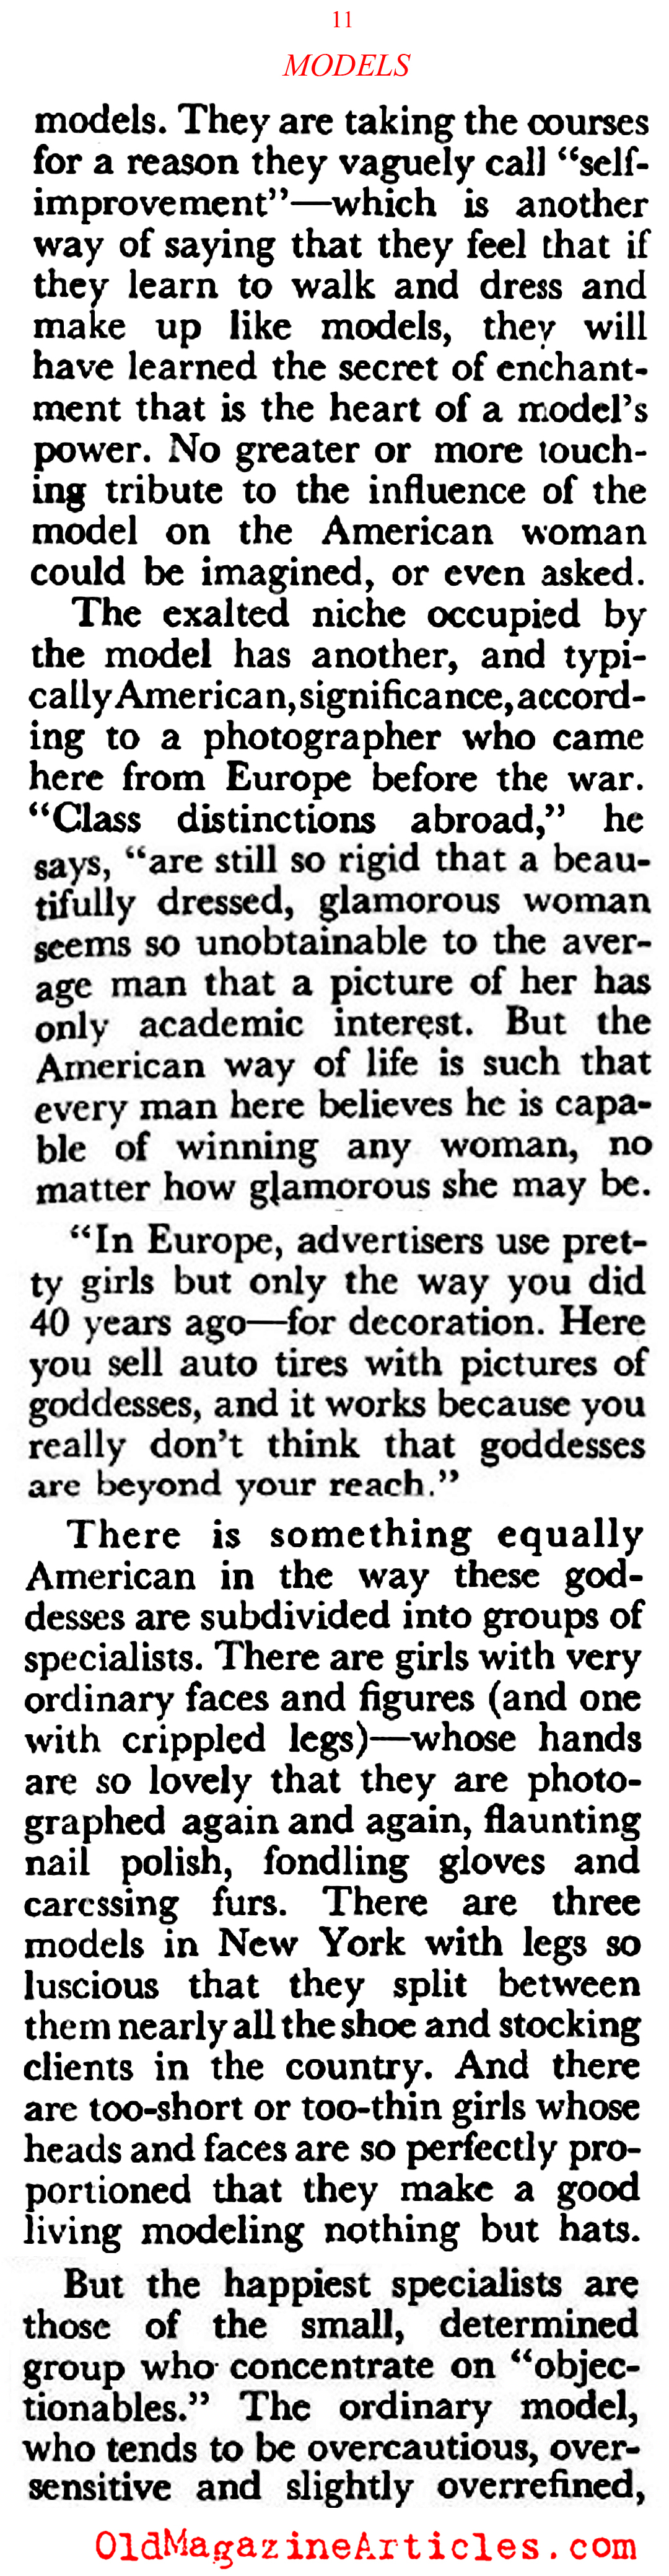 Cover Girls (Coronet Magazine, 1948)